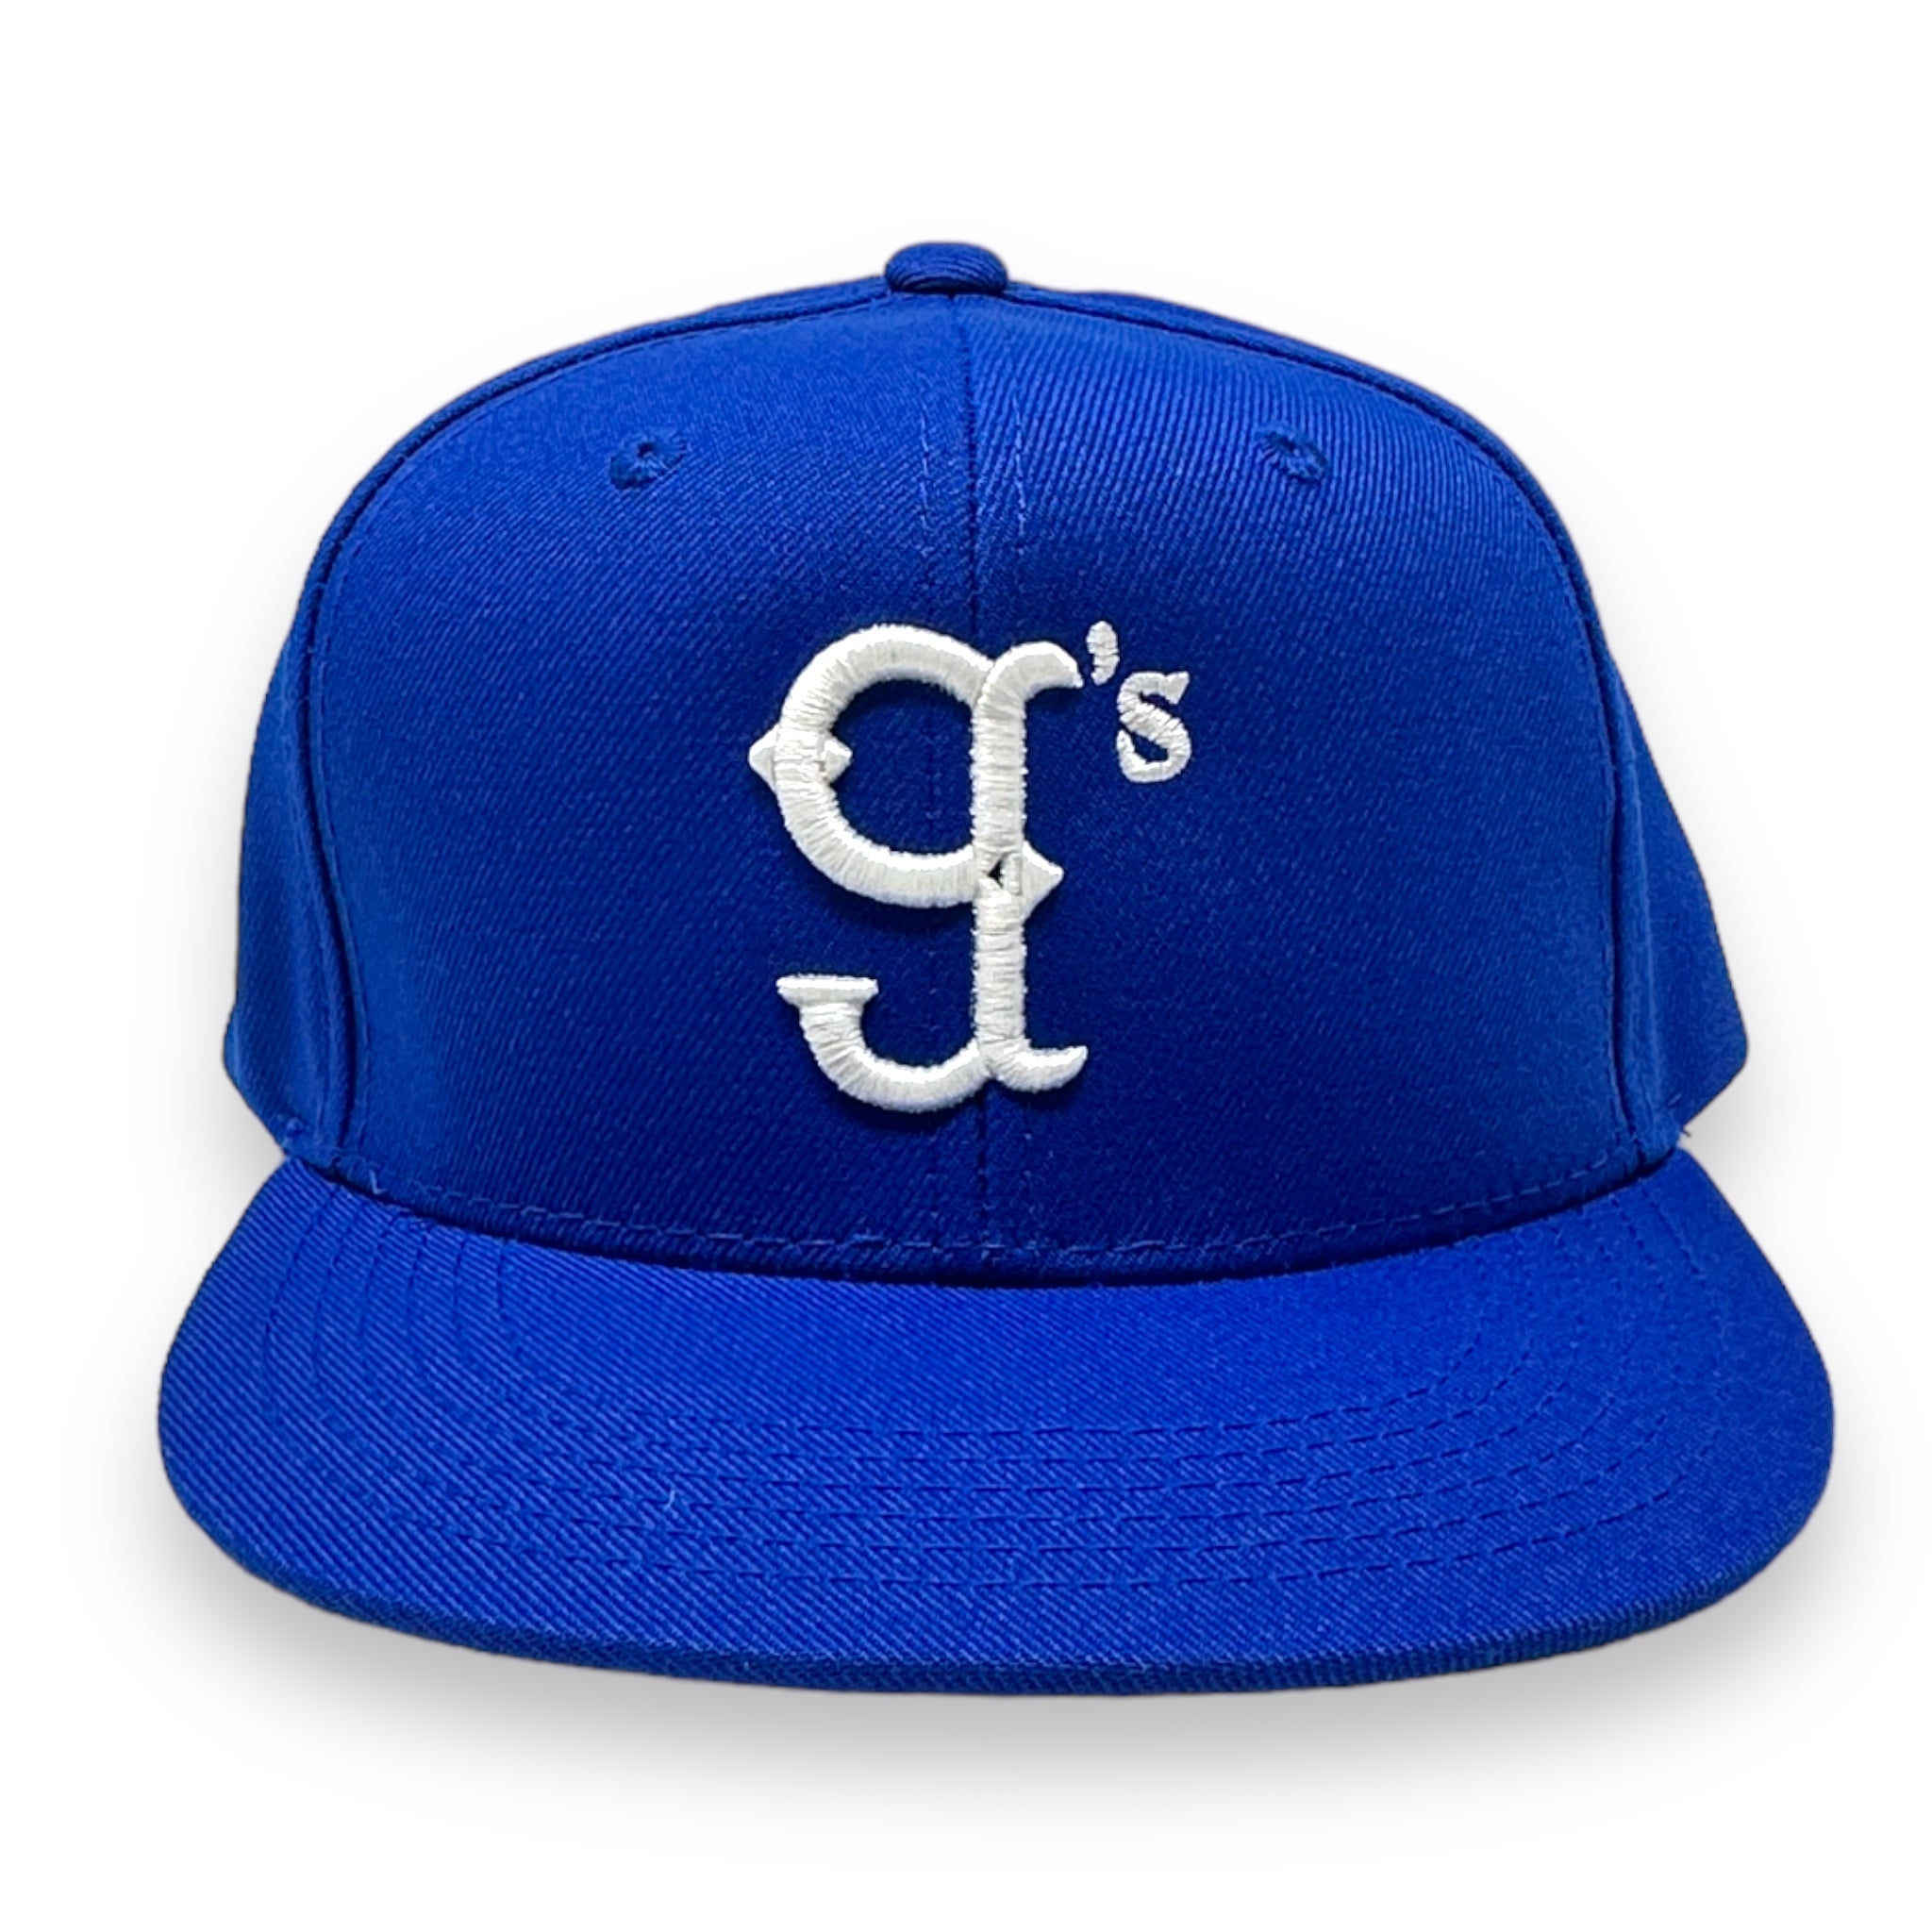 The Little g's Custom Snap Back Hat (Blue)